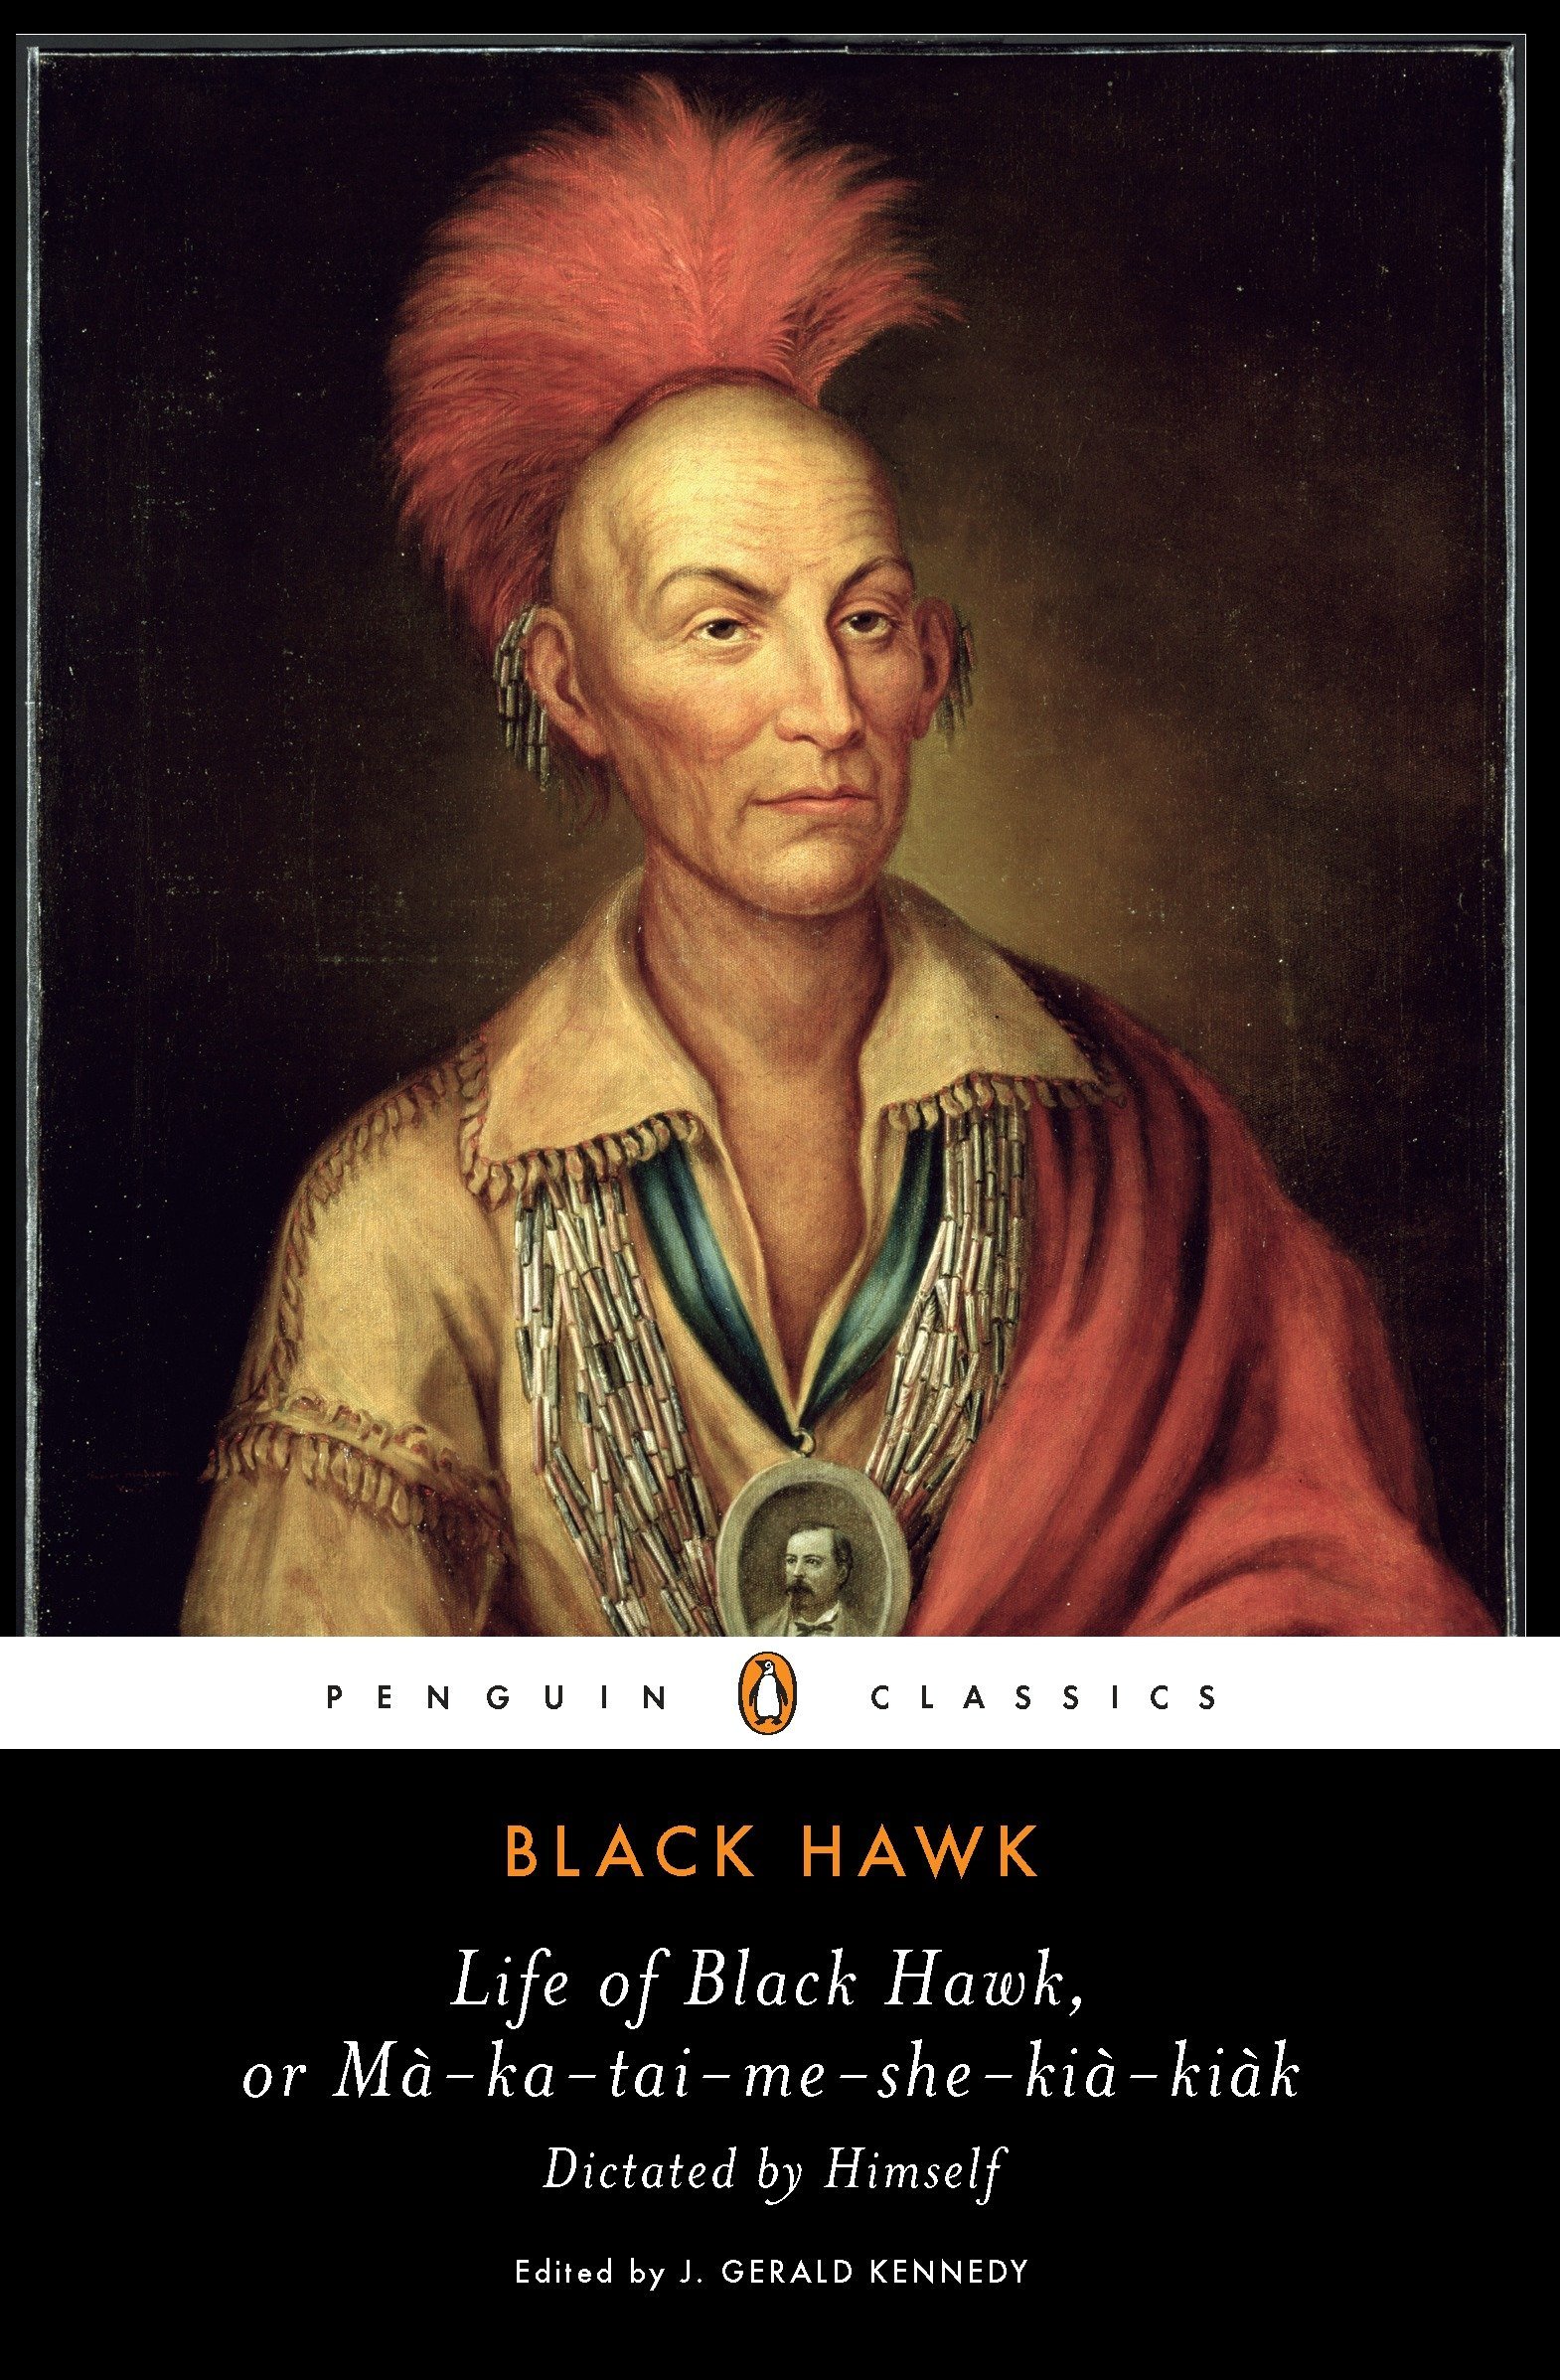 Life of Black Hawk, or Ma-ka-tai-me-she-kia-kiak: Dictated by Himself (Penguin Classics)